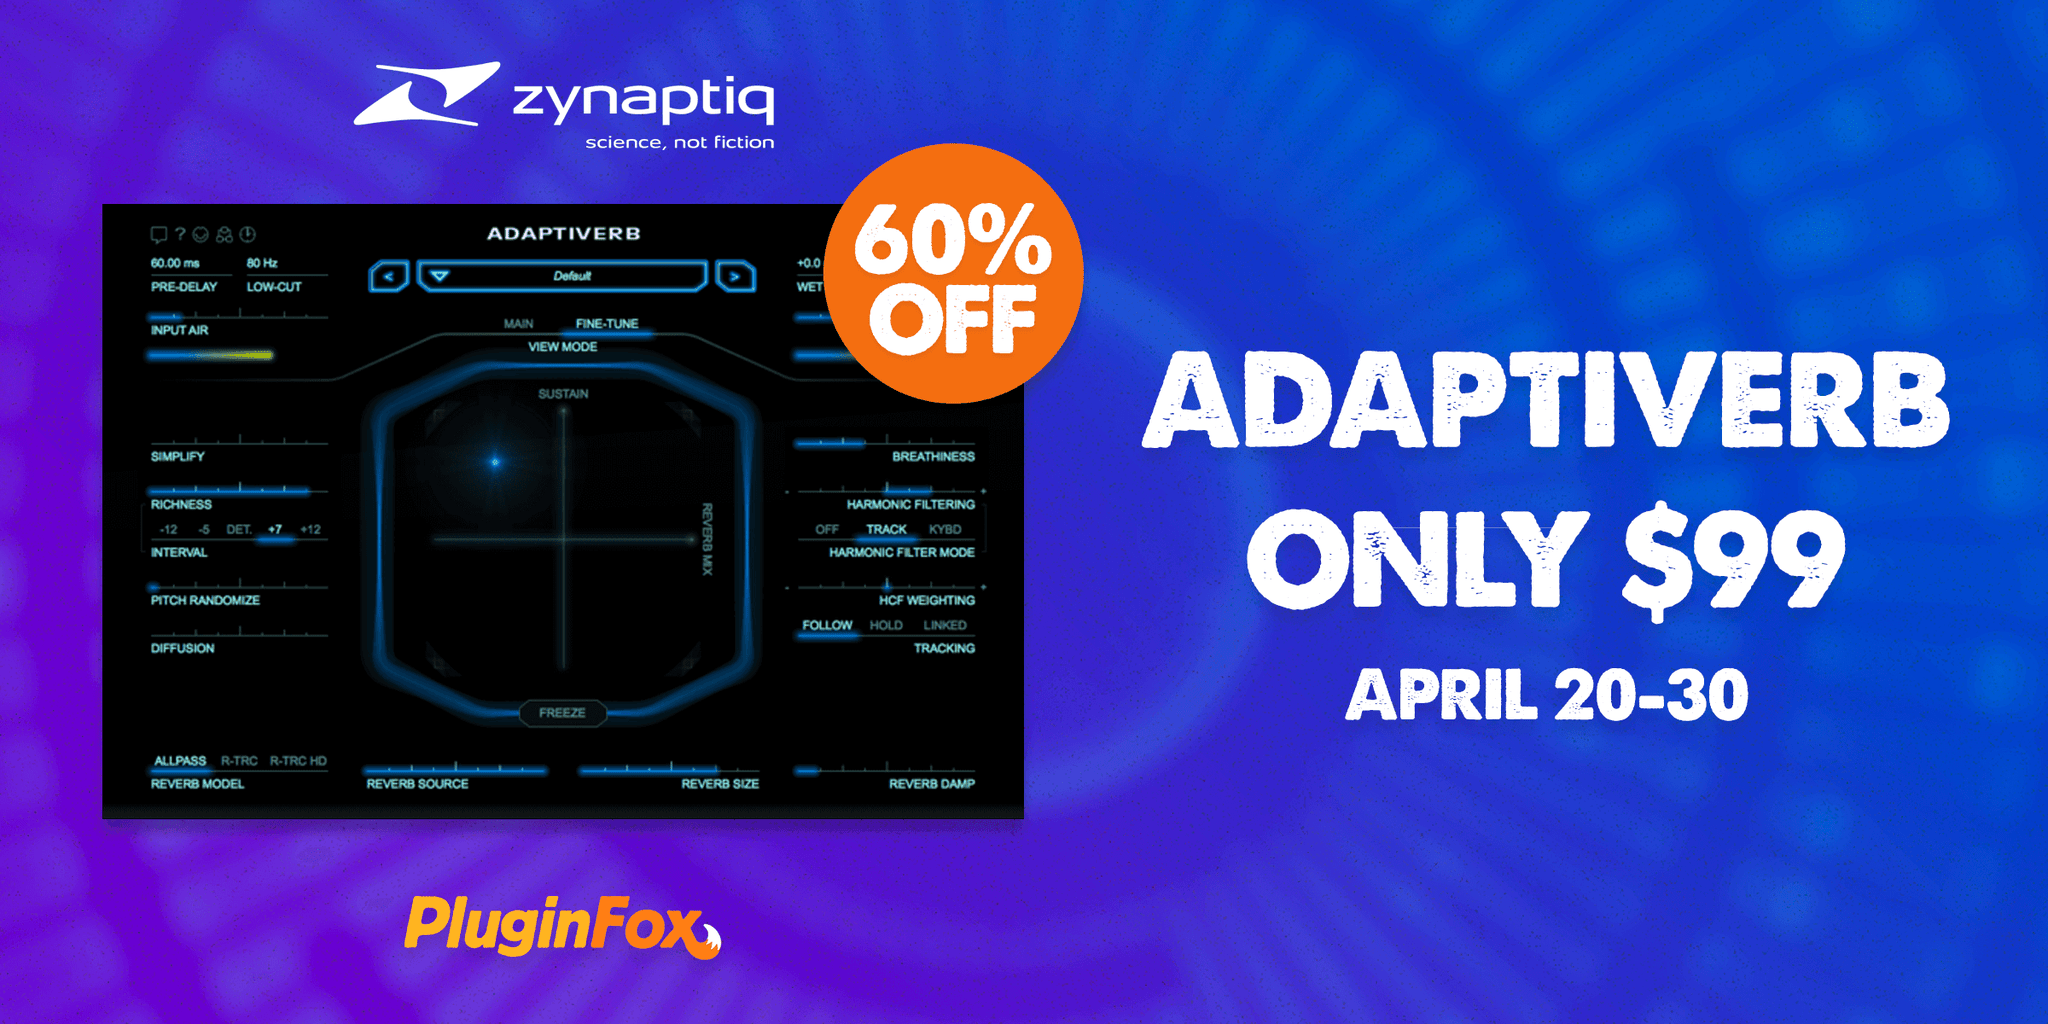 Zynaptiq Adaptiverb Sale - April 20-30